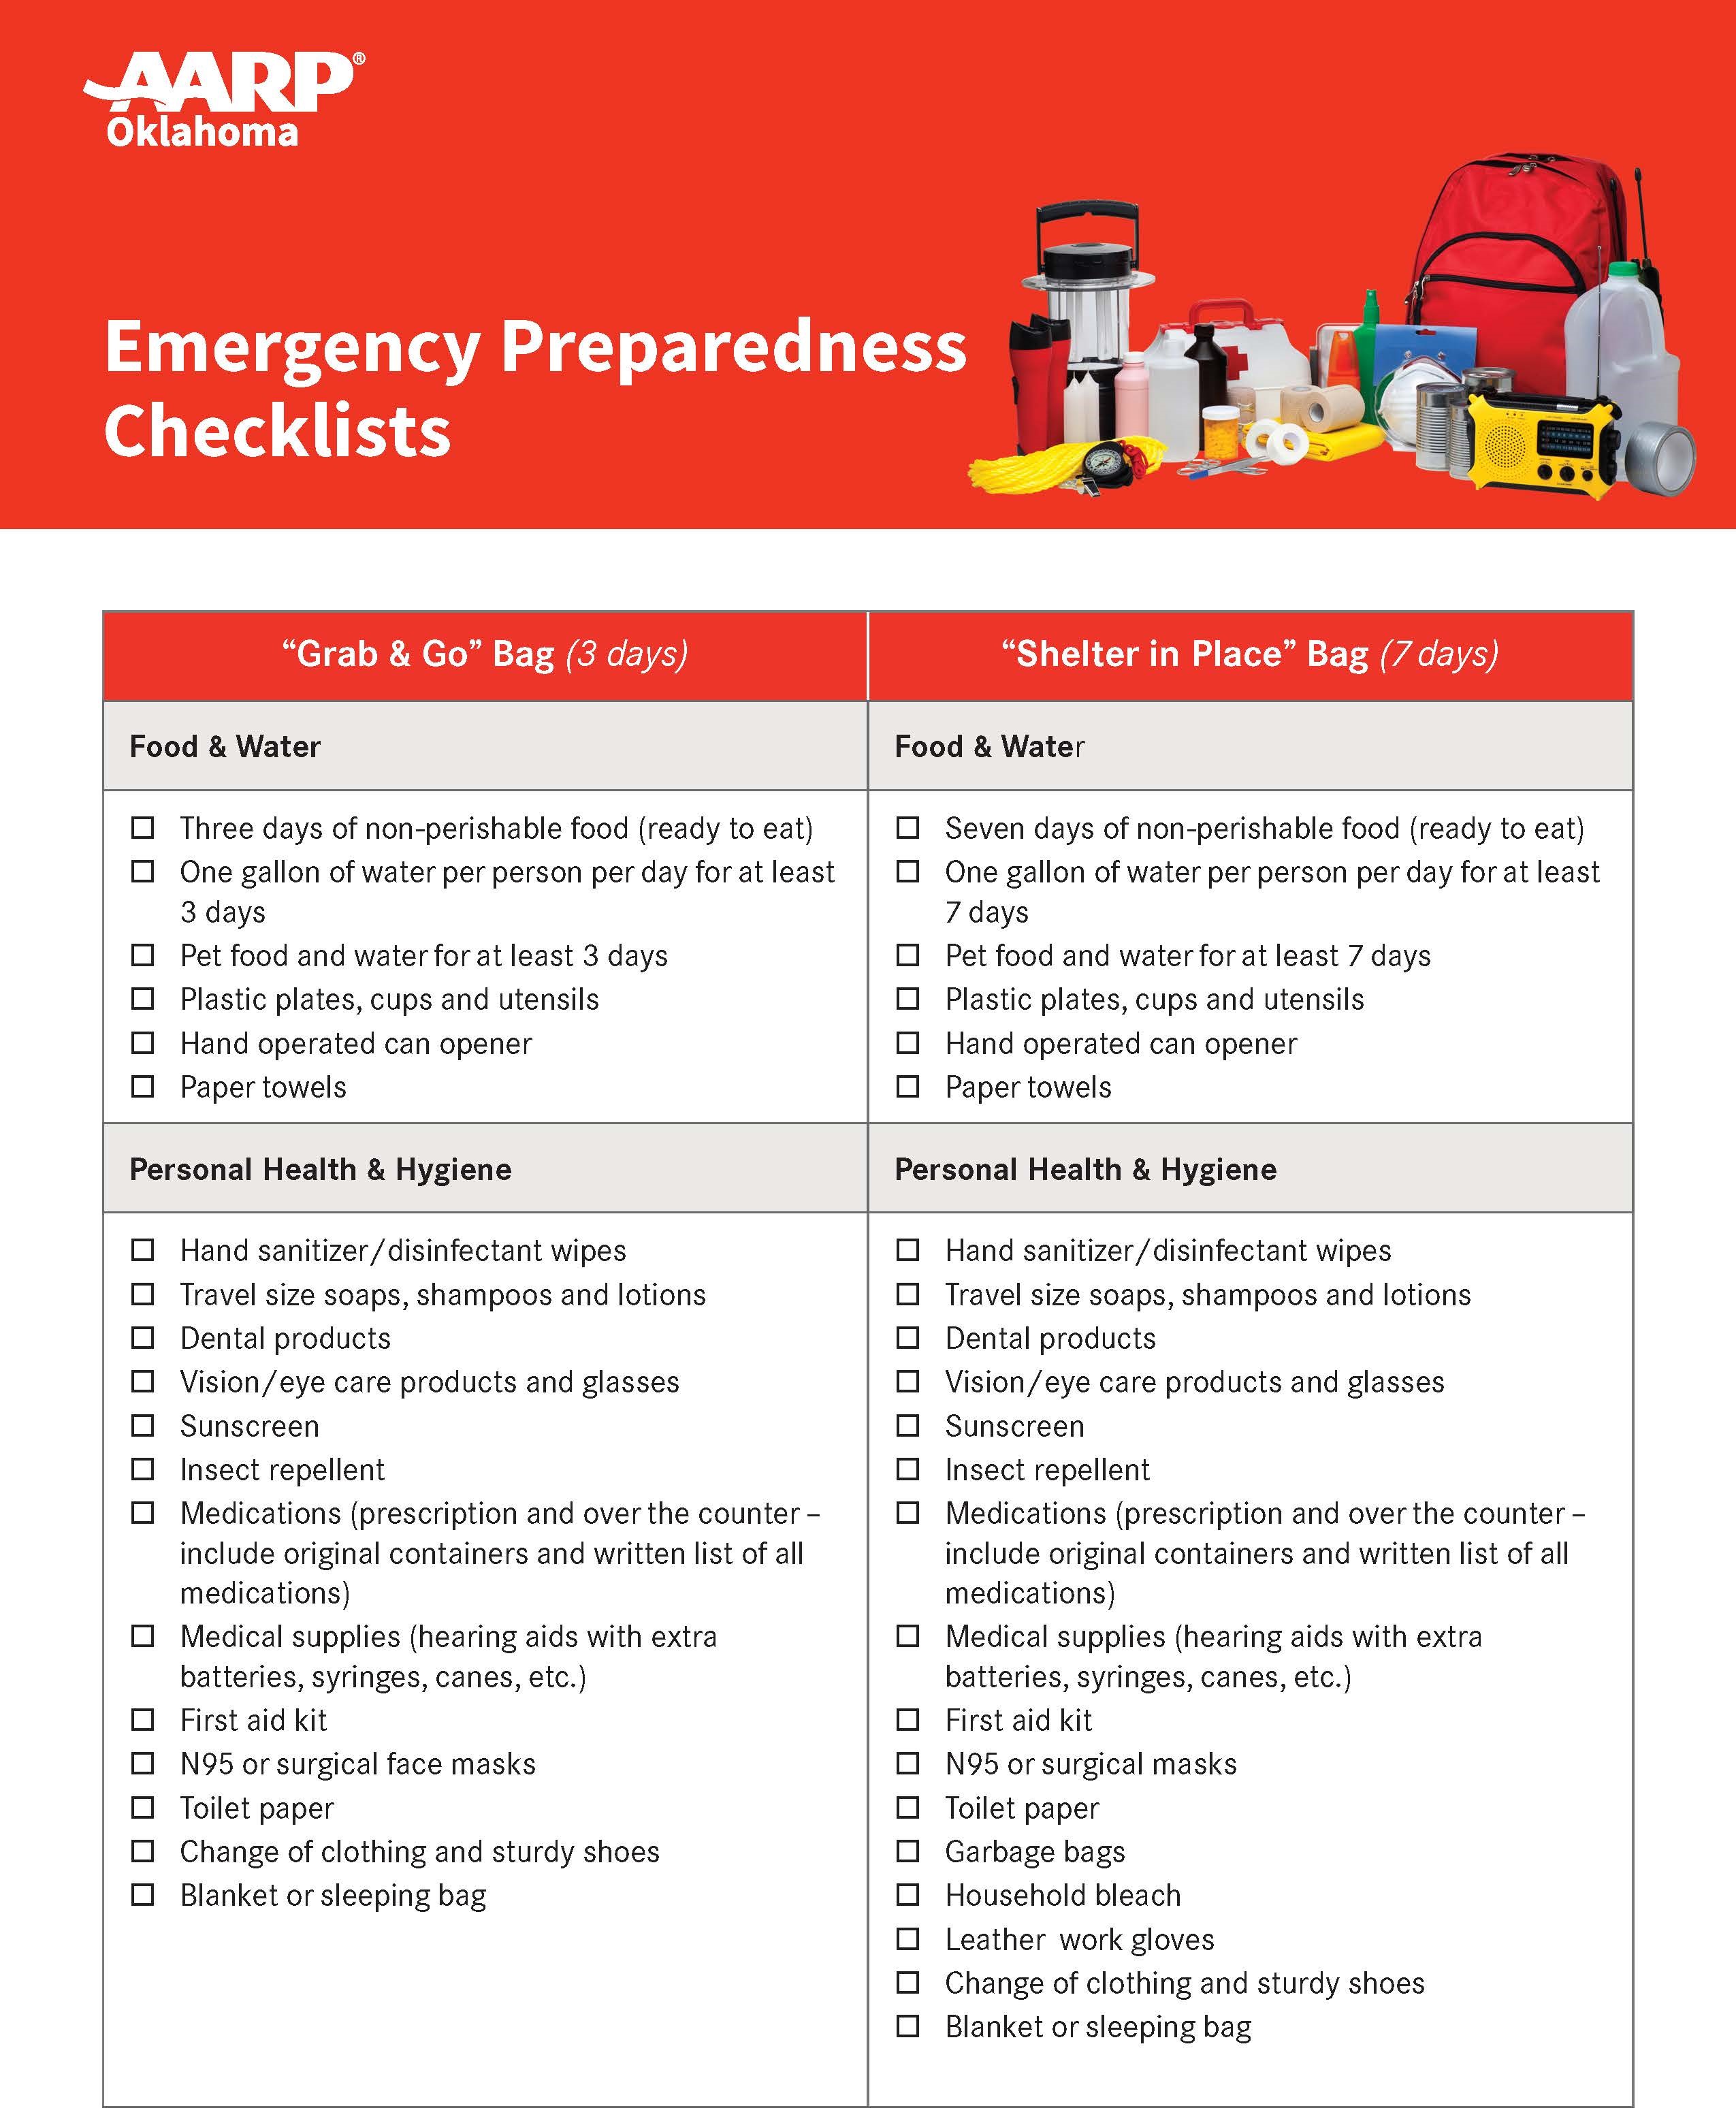 1253302 OK Disaster Prep Checklist web_Page_1.jpg